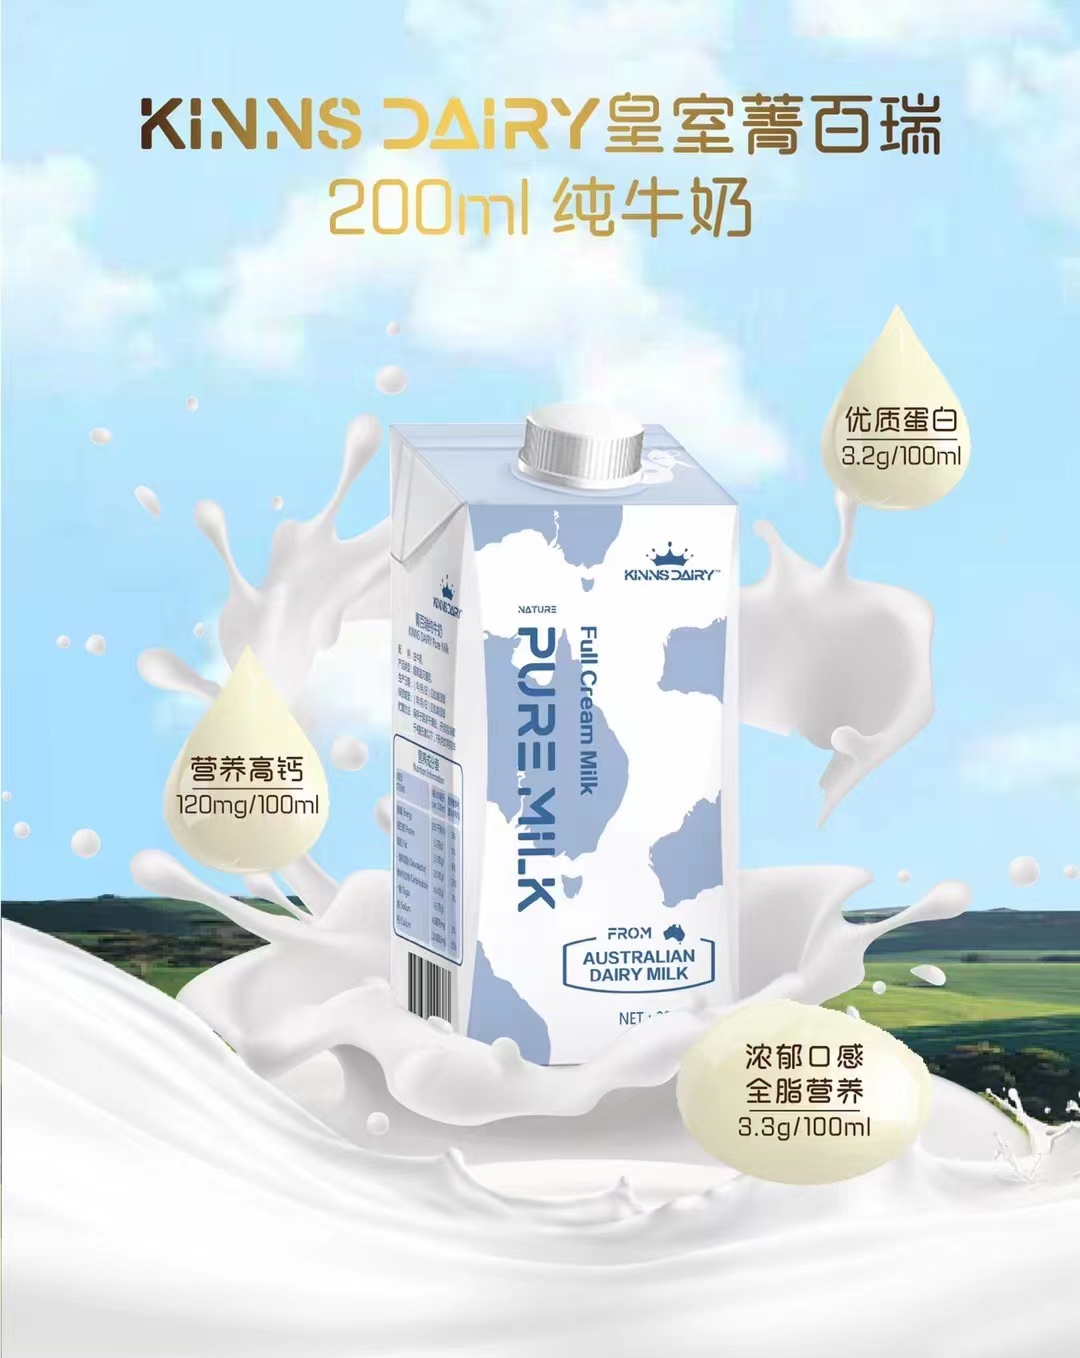 菁百瑞纯牛奶澳洲皇室KINNSDAIRY 200ml*24盒原装进口高钙常温奶